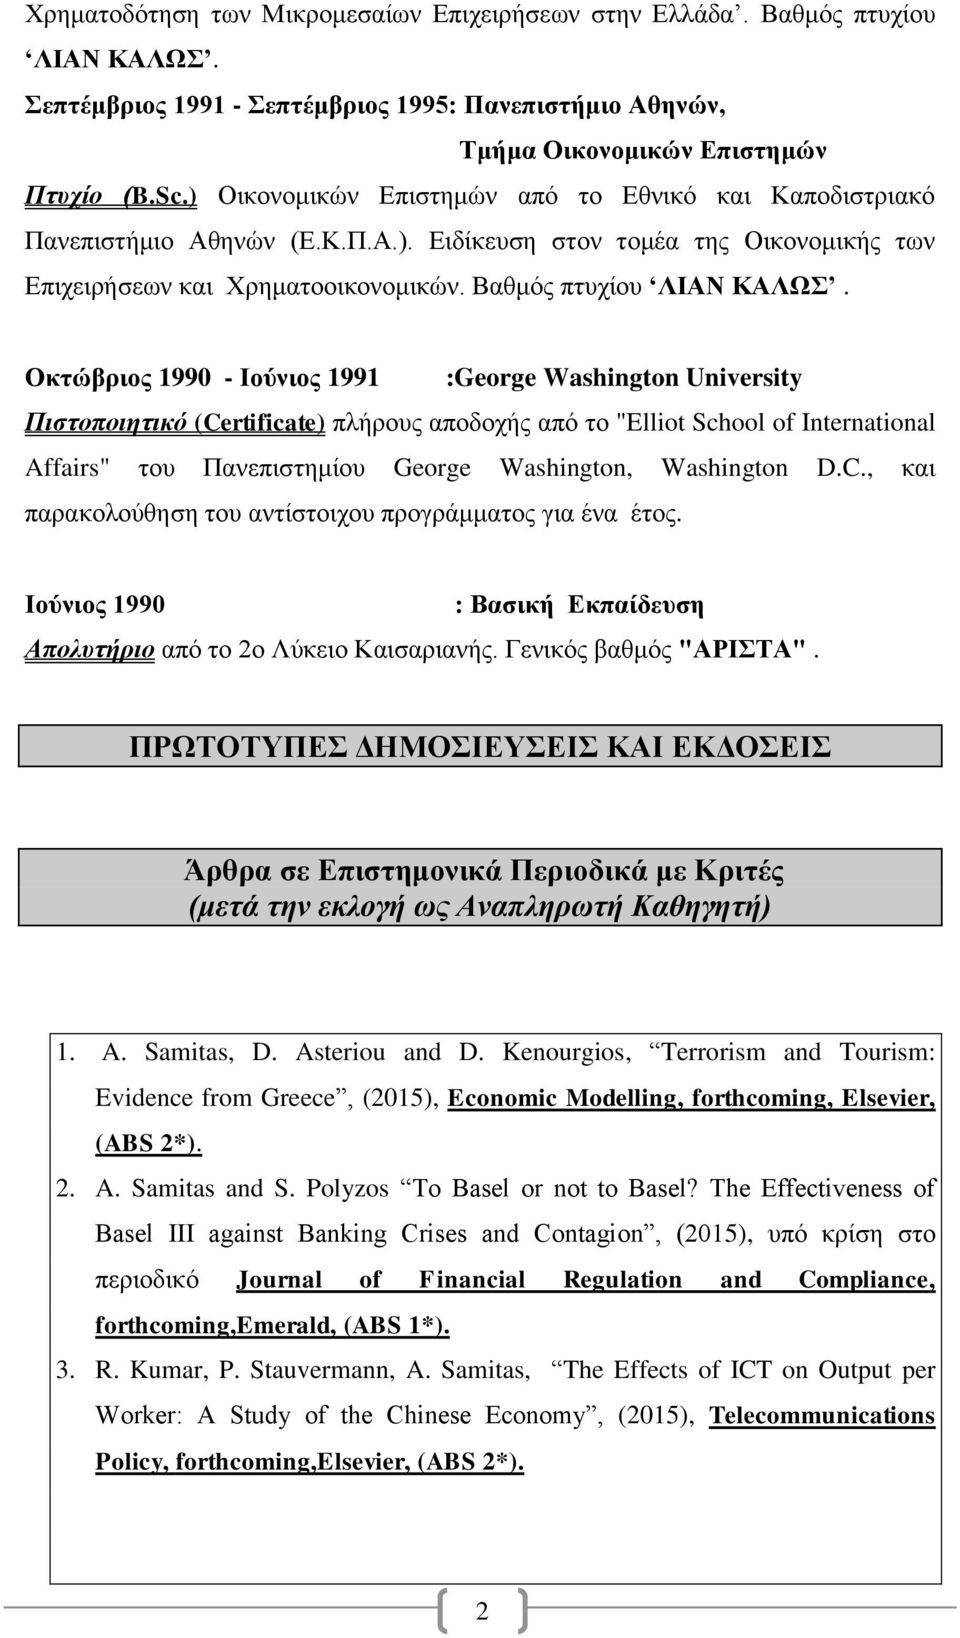 Οκτώβριος 1990 - Ιούνιος 1991 :George Washington University Πιστοποιητικό (Certificate) πλήρους αποδοχής από το "Elliot School of International Affairs" του Πανεπιστημίου George Washington,